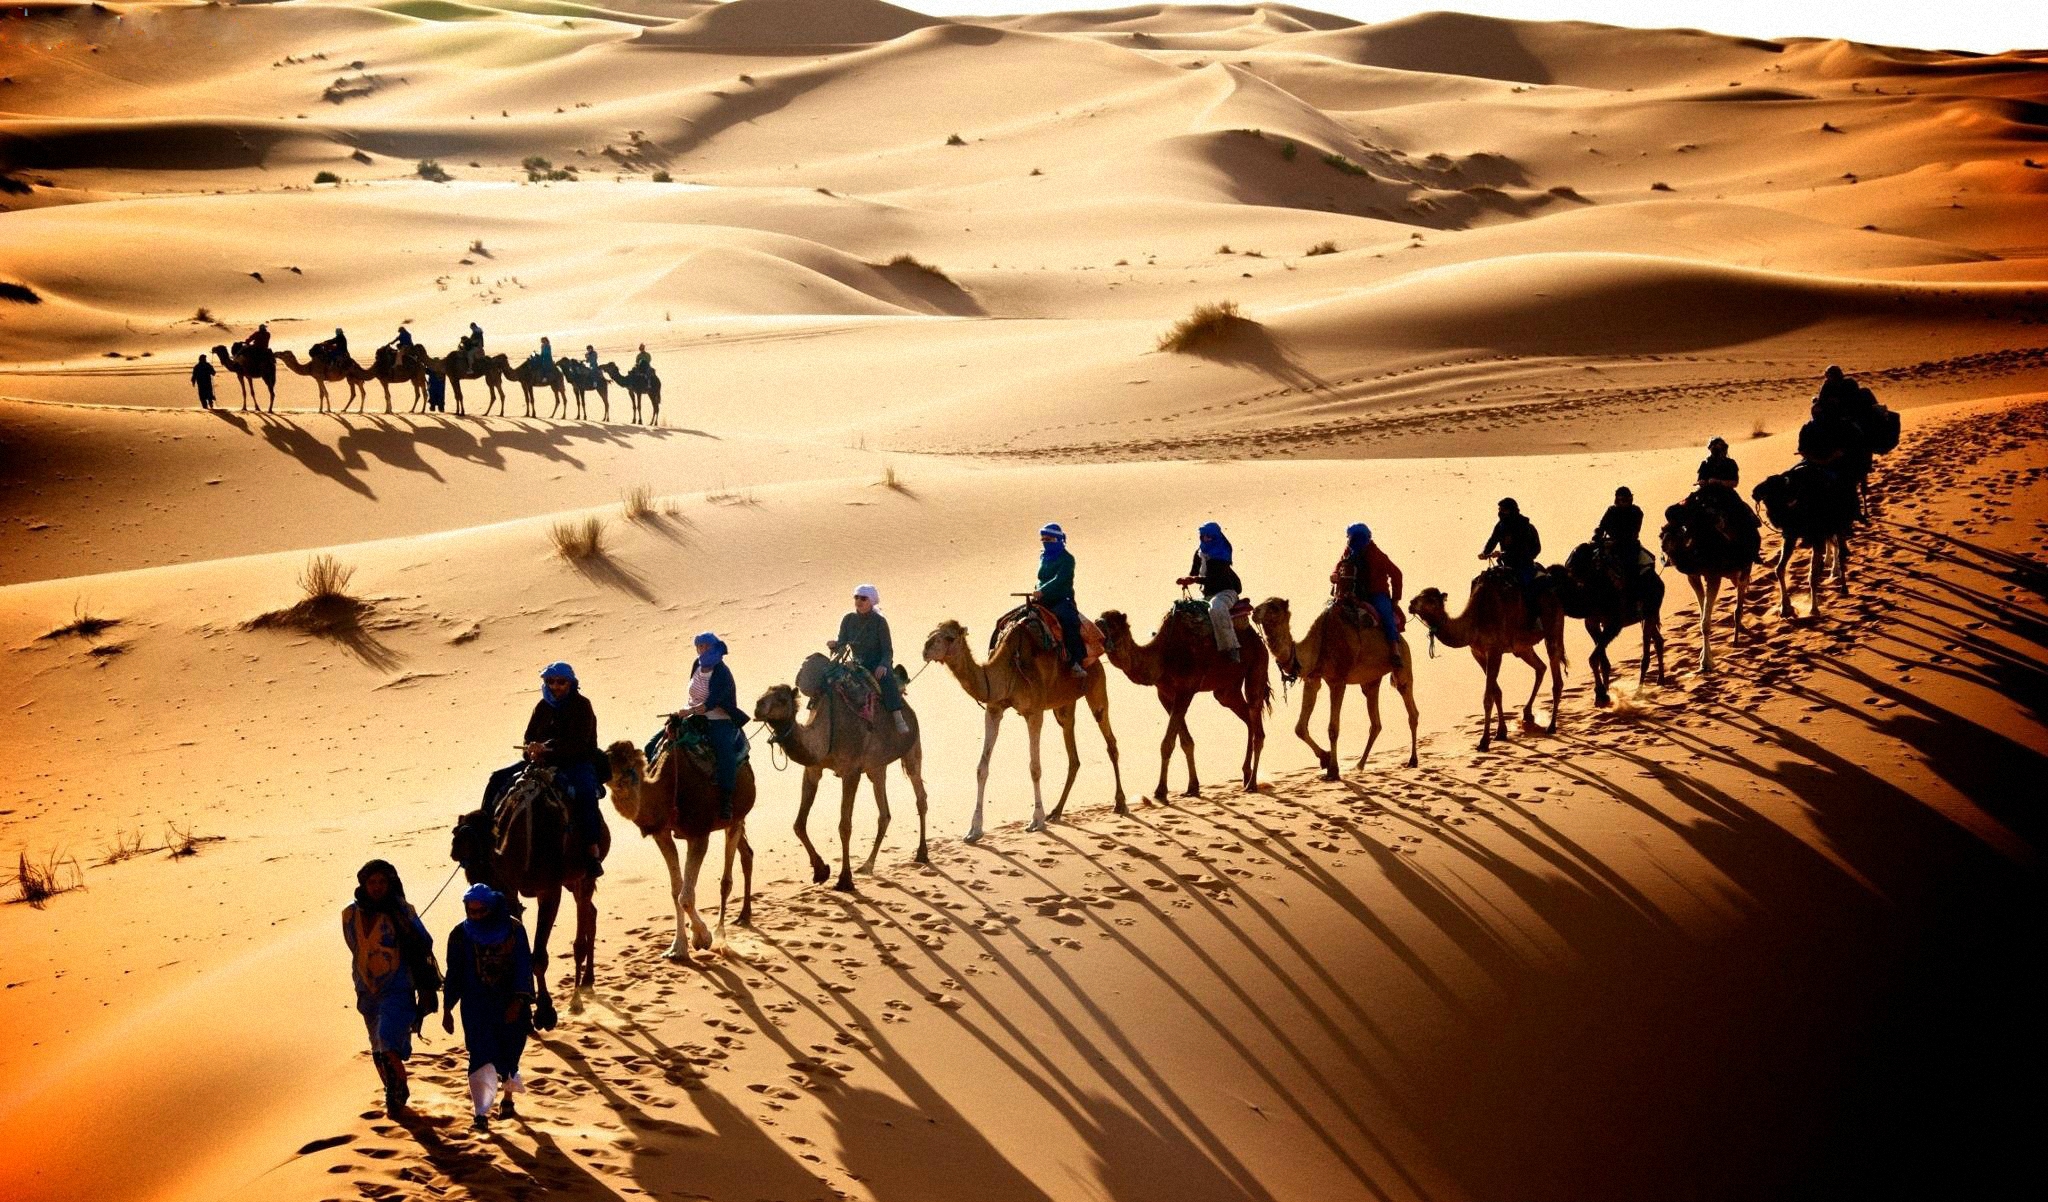 Караван картинка. Верблюд Караван шелковый путь. Великий шелковый путь Караван. Караван верблюдов в пустыне.